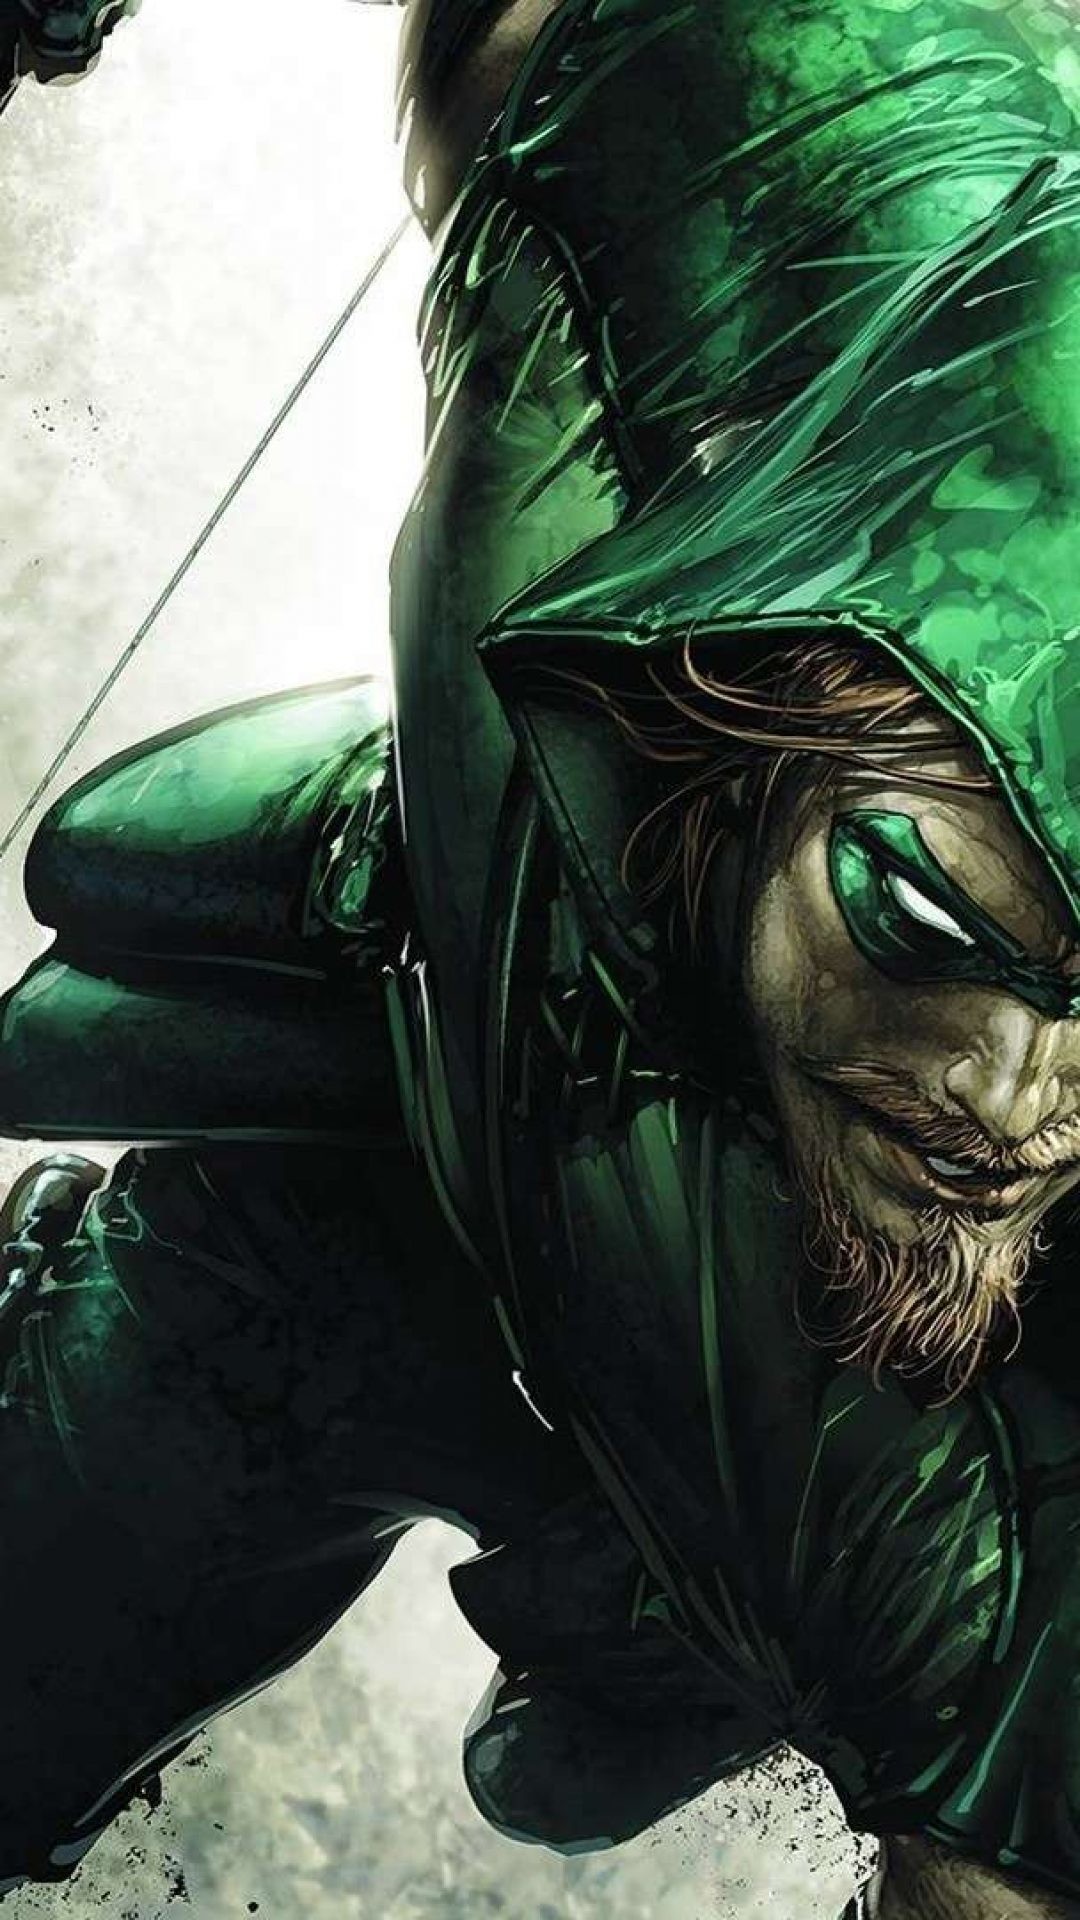 green arrow wallpaper,green,fictional character,cool,cg artwork,supervillain